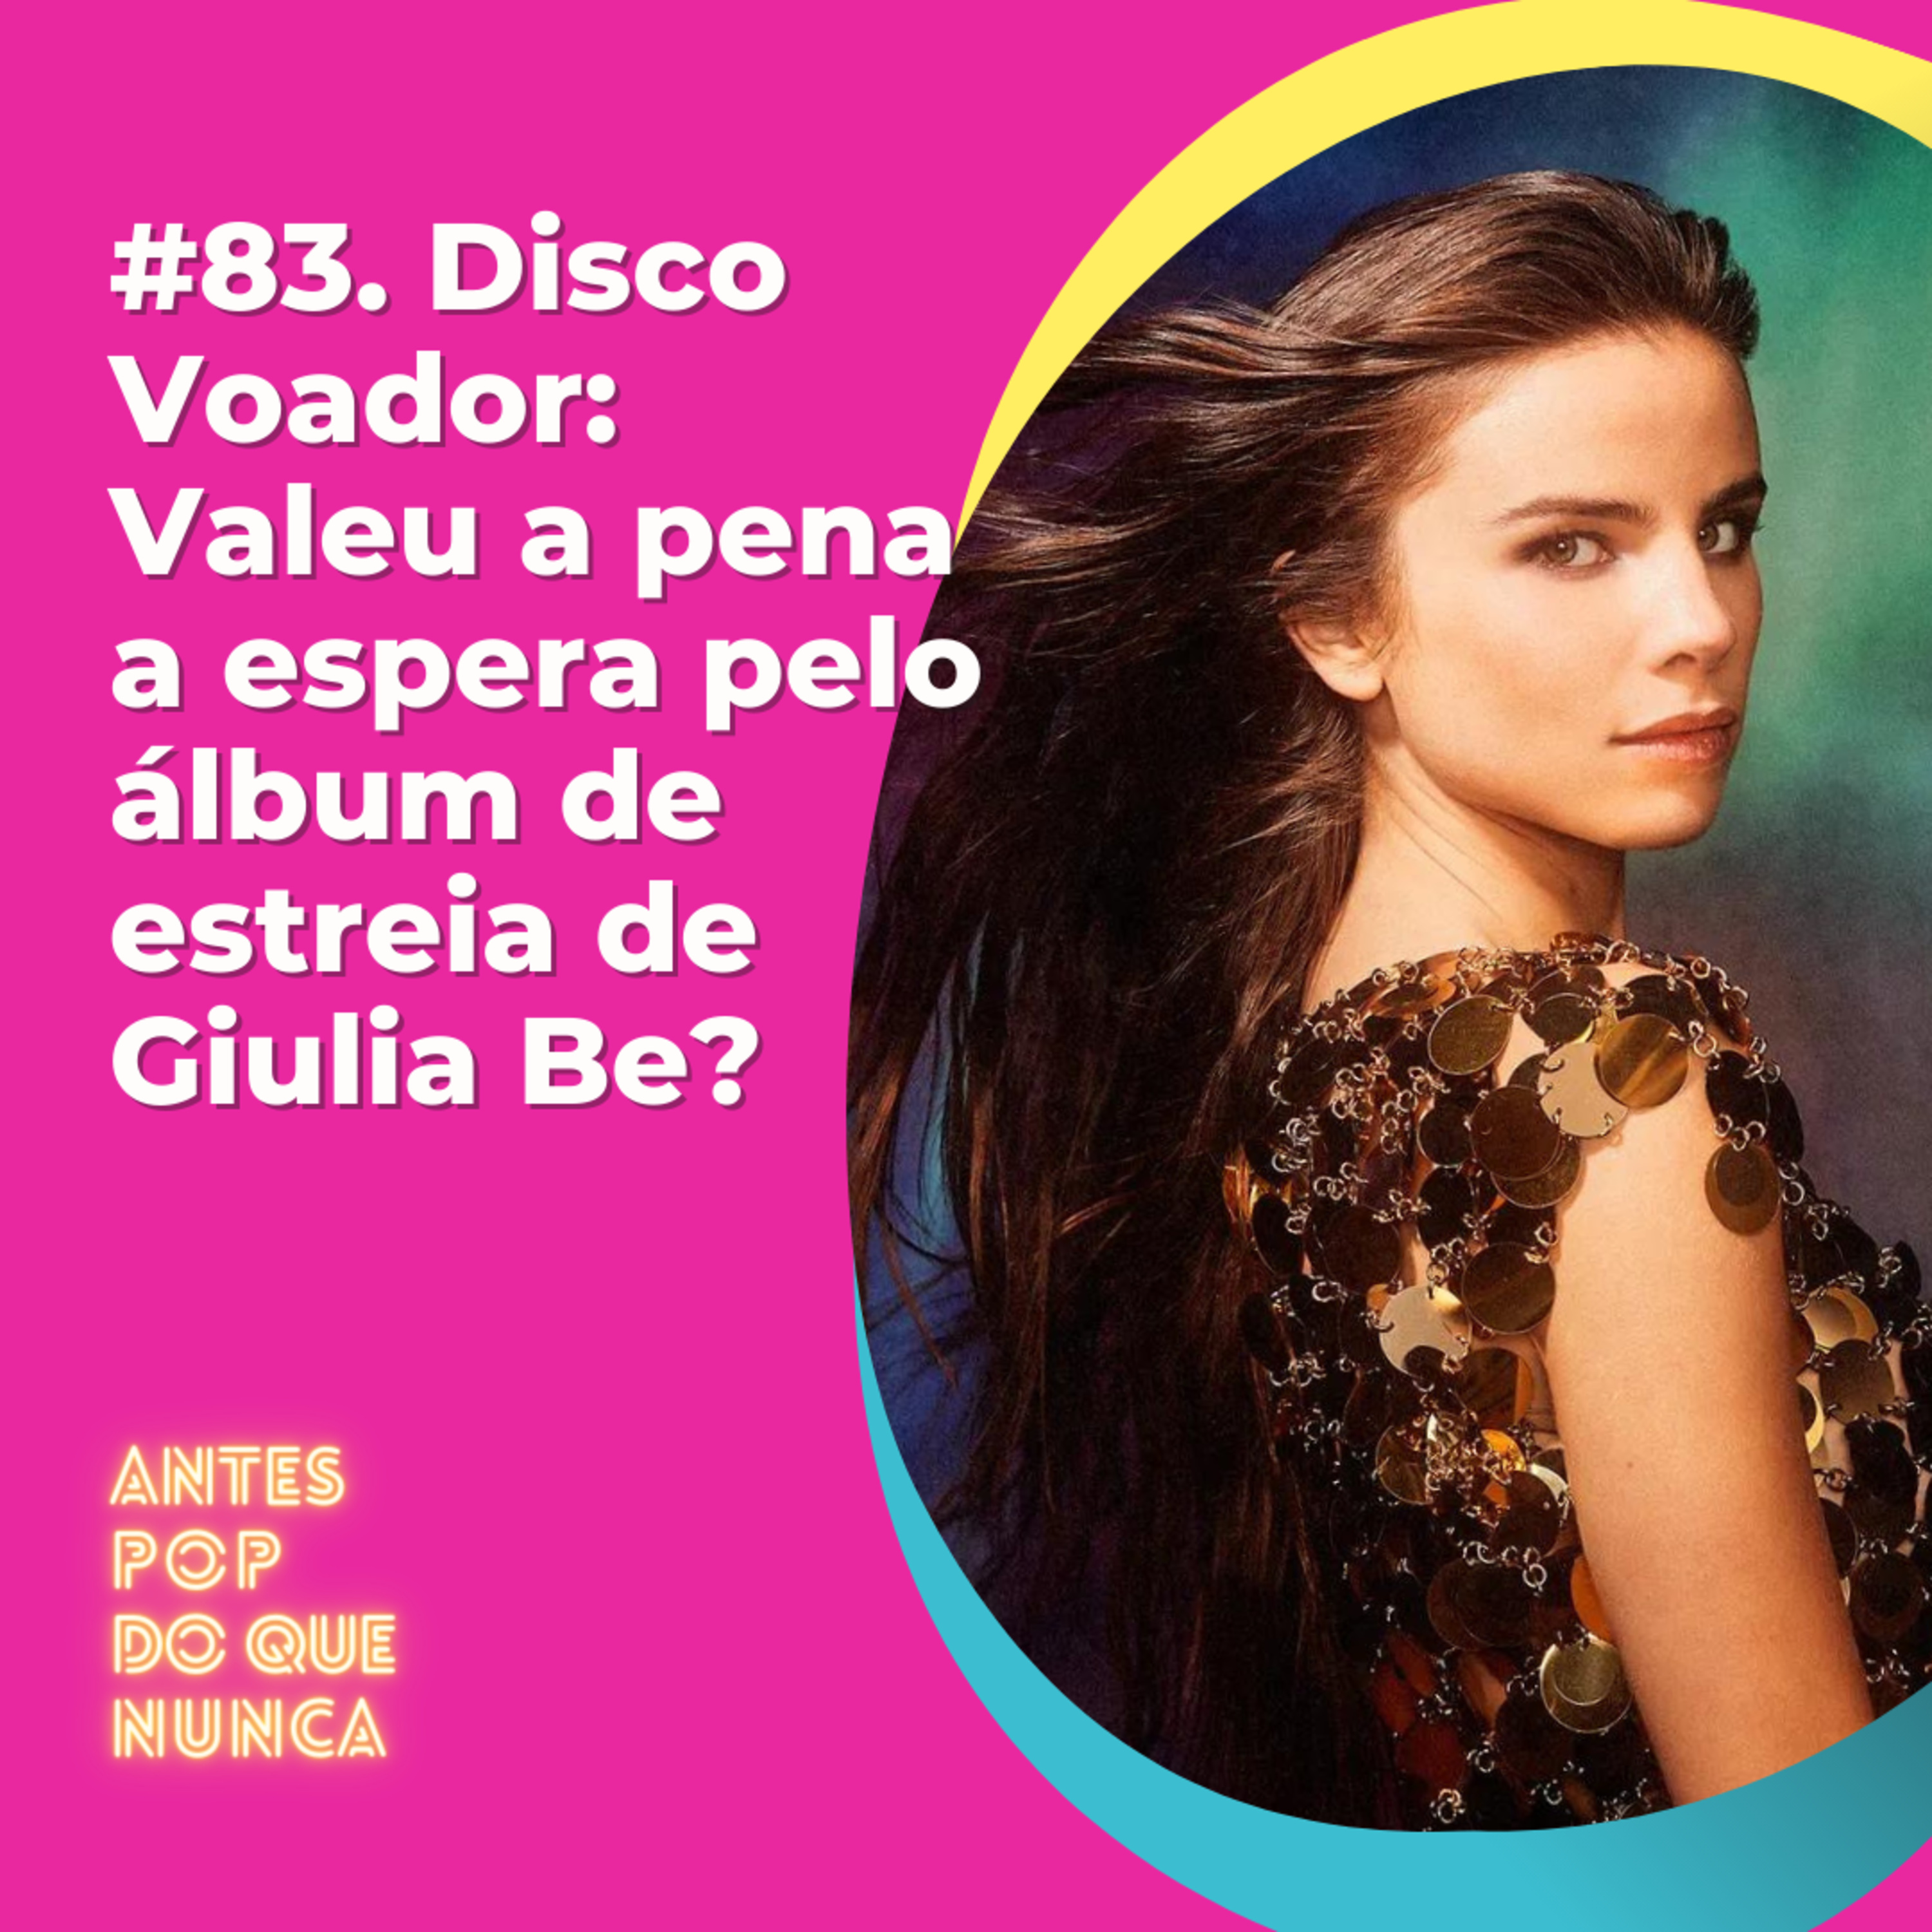 #83. Disco Voador: Valeu a pena a espera pelo álbum de estreia de Giulia Be?